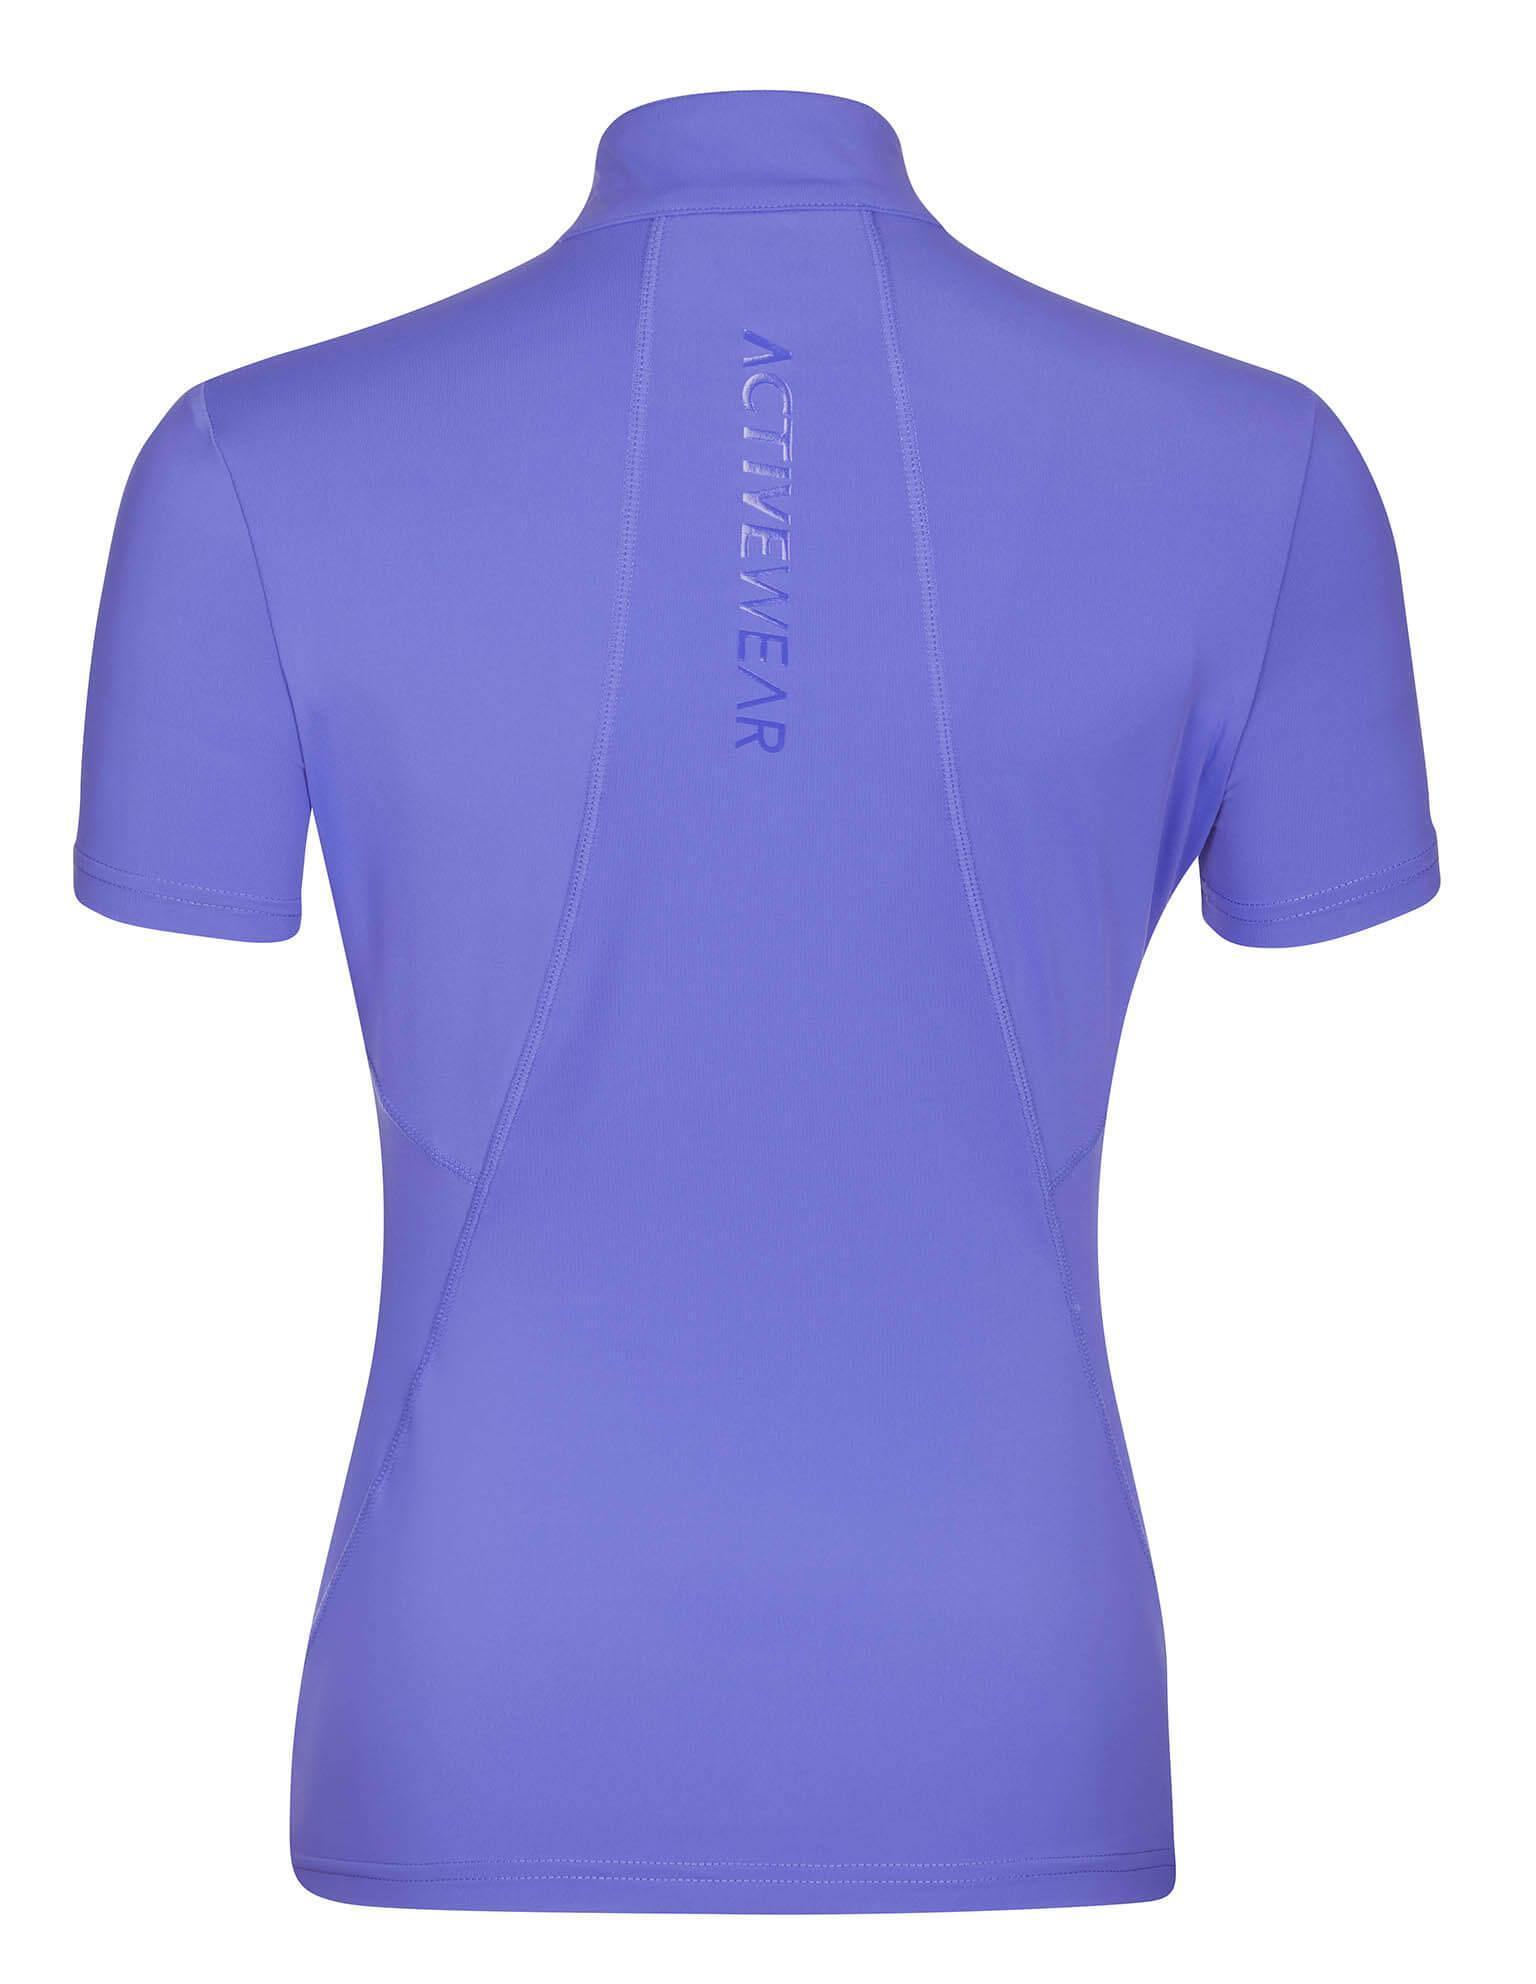 LeMieux Activewear Short Sleeve Base, Bluebell - HEYO